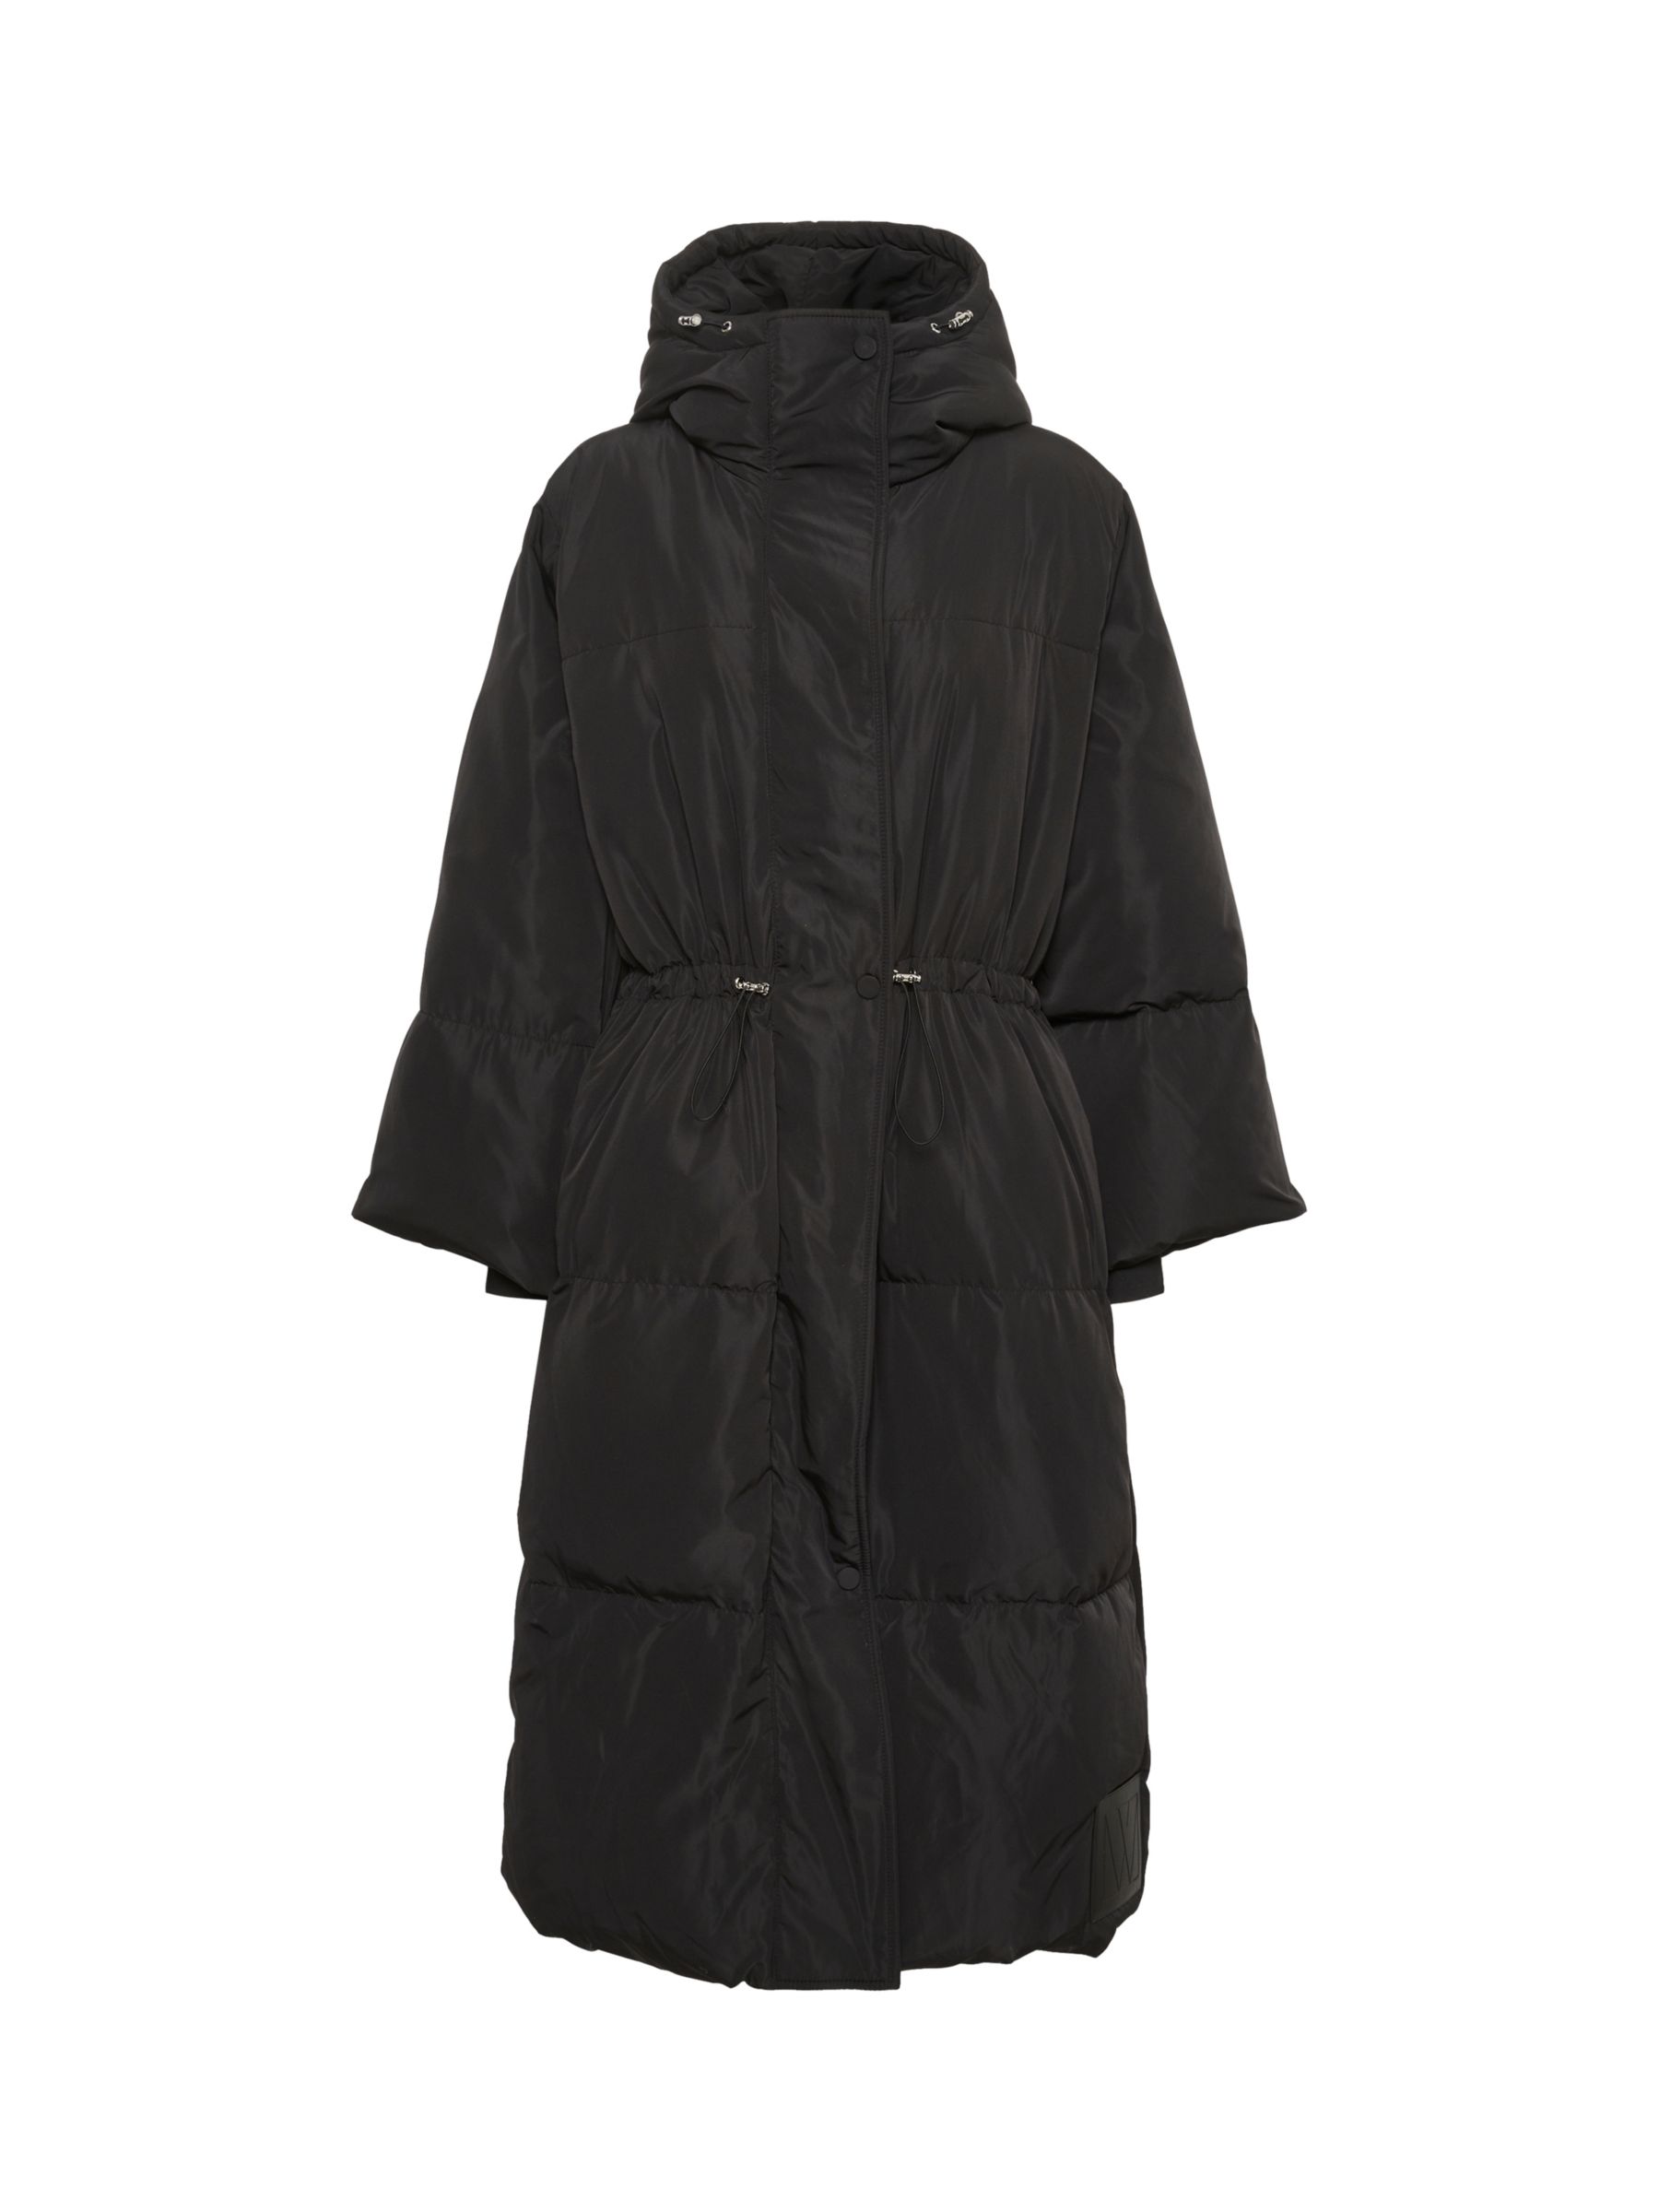 InWear Phyllys Long Puffer Coat, Black at John Lewis & Partners